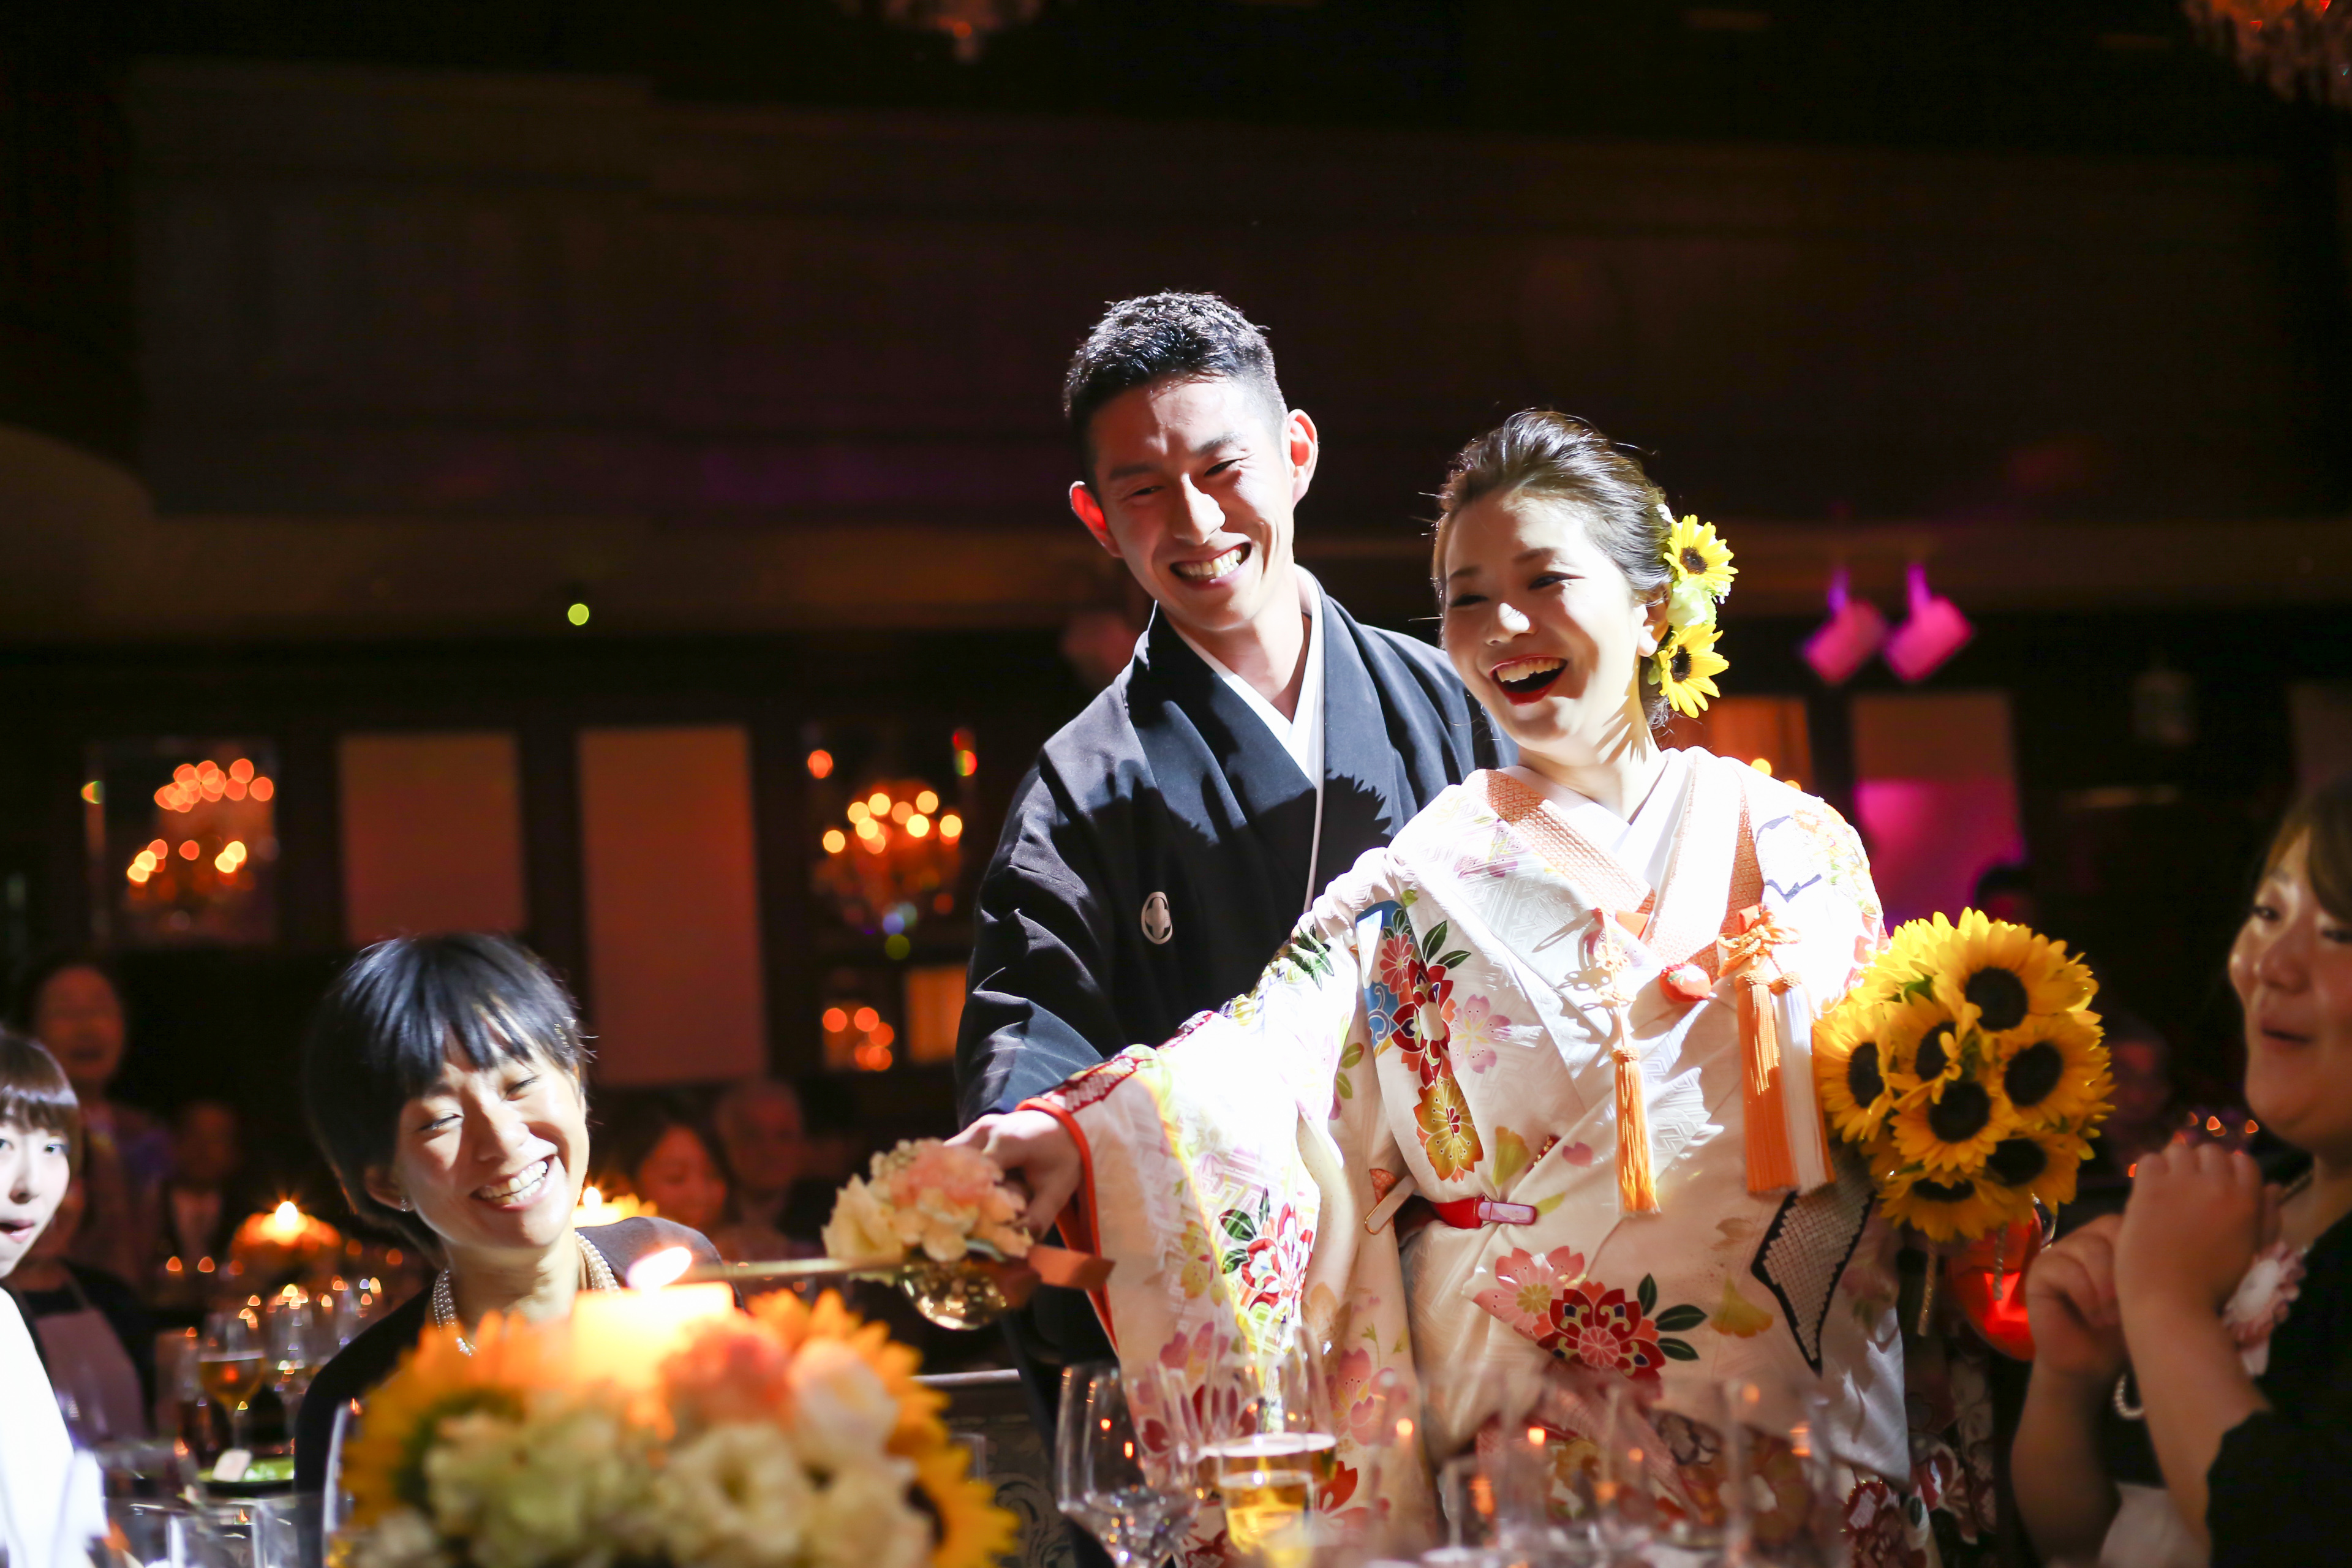 19年に和装の結婚式でおすすめのbgmは ケーキ入刀などシーン別にご紹介 神戸旧居留地の結婚式場 神戸セントモルガン教会